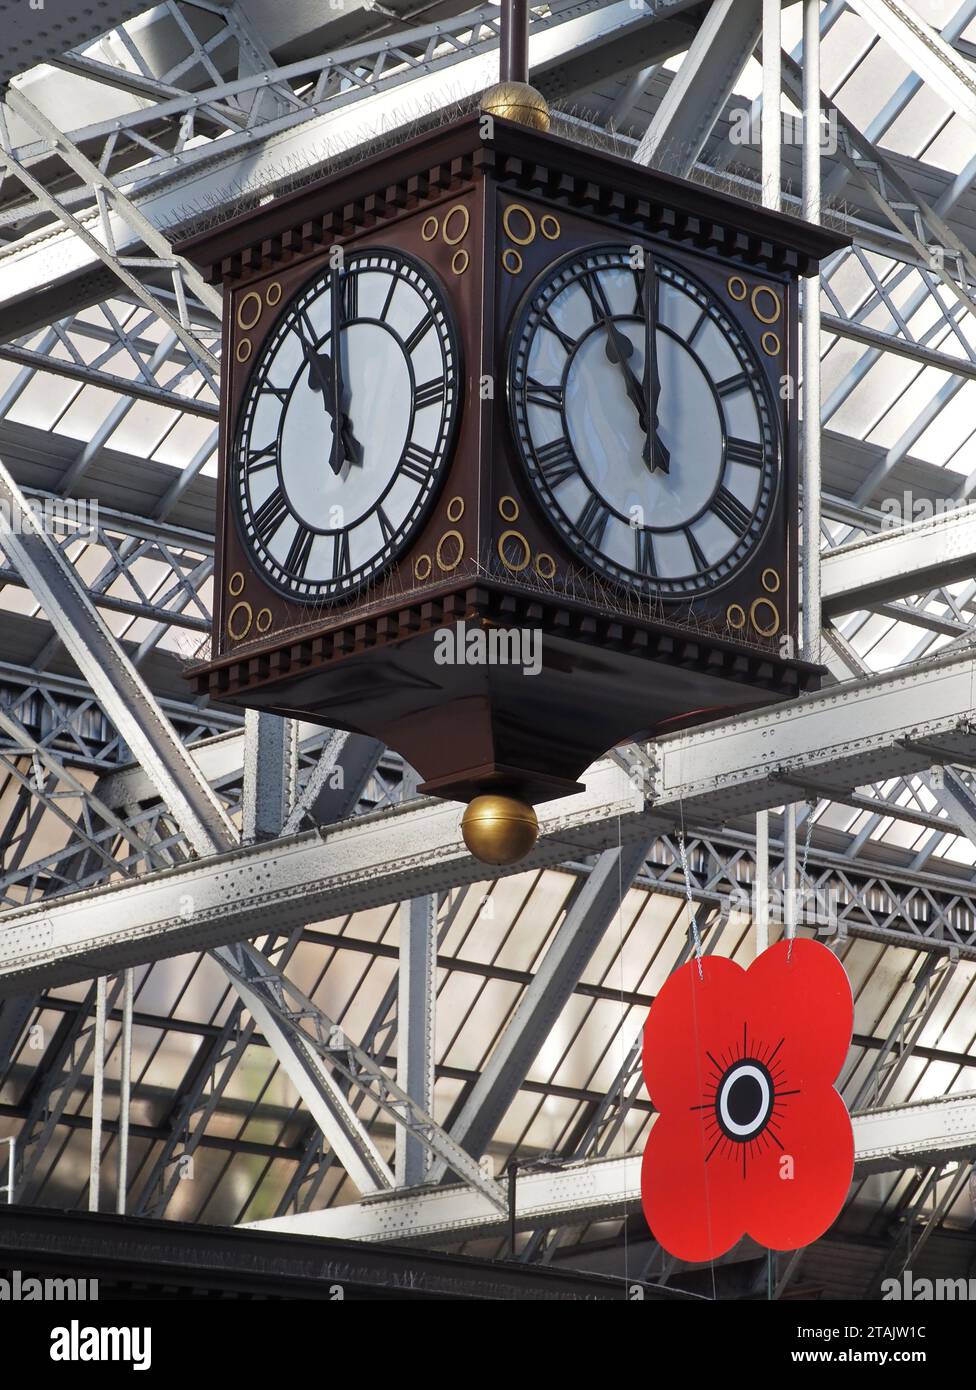 A la onzième heure du onzième jour du onzième mois. Horloge de la gare centrale de Glasgow Banque D'Images